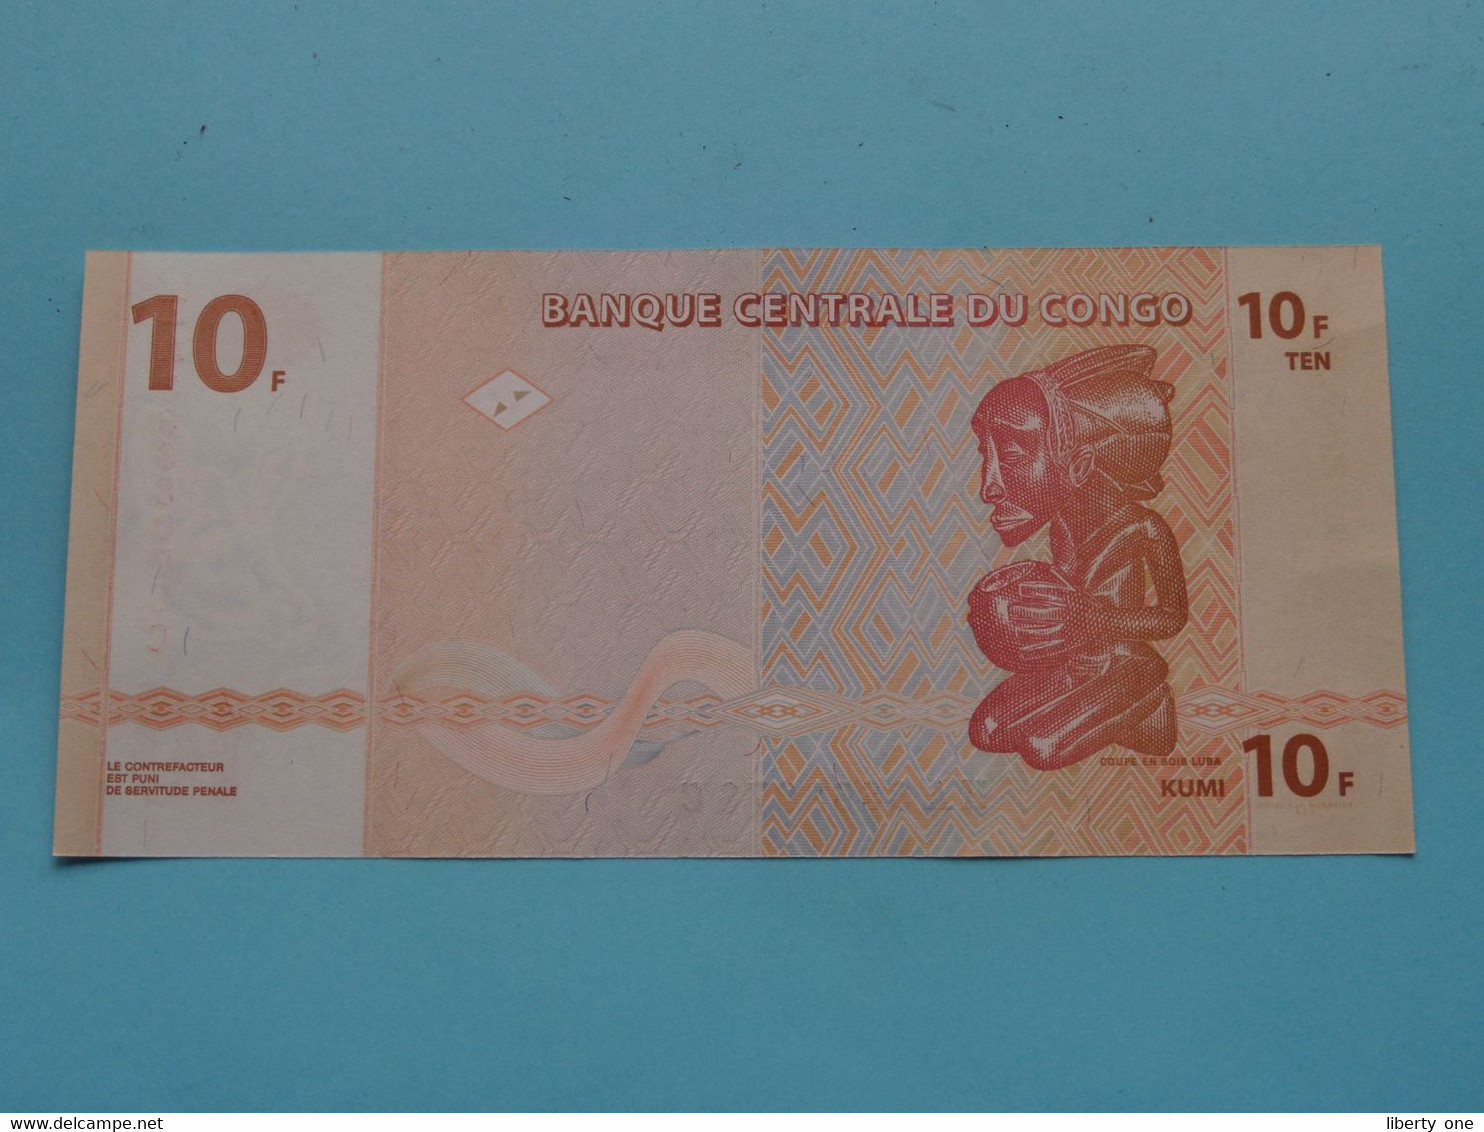 10 ( Dix ) Francs ( HA3668076C ) 2003 > Banque Centrale Du CONGO ( For Grade, Please See Photo ) UNC ! - República Del Congo (Congo Brazzaville)